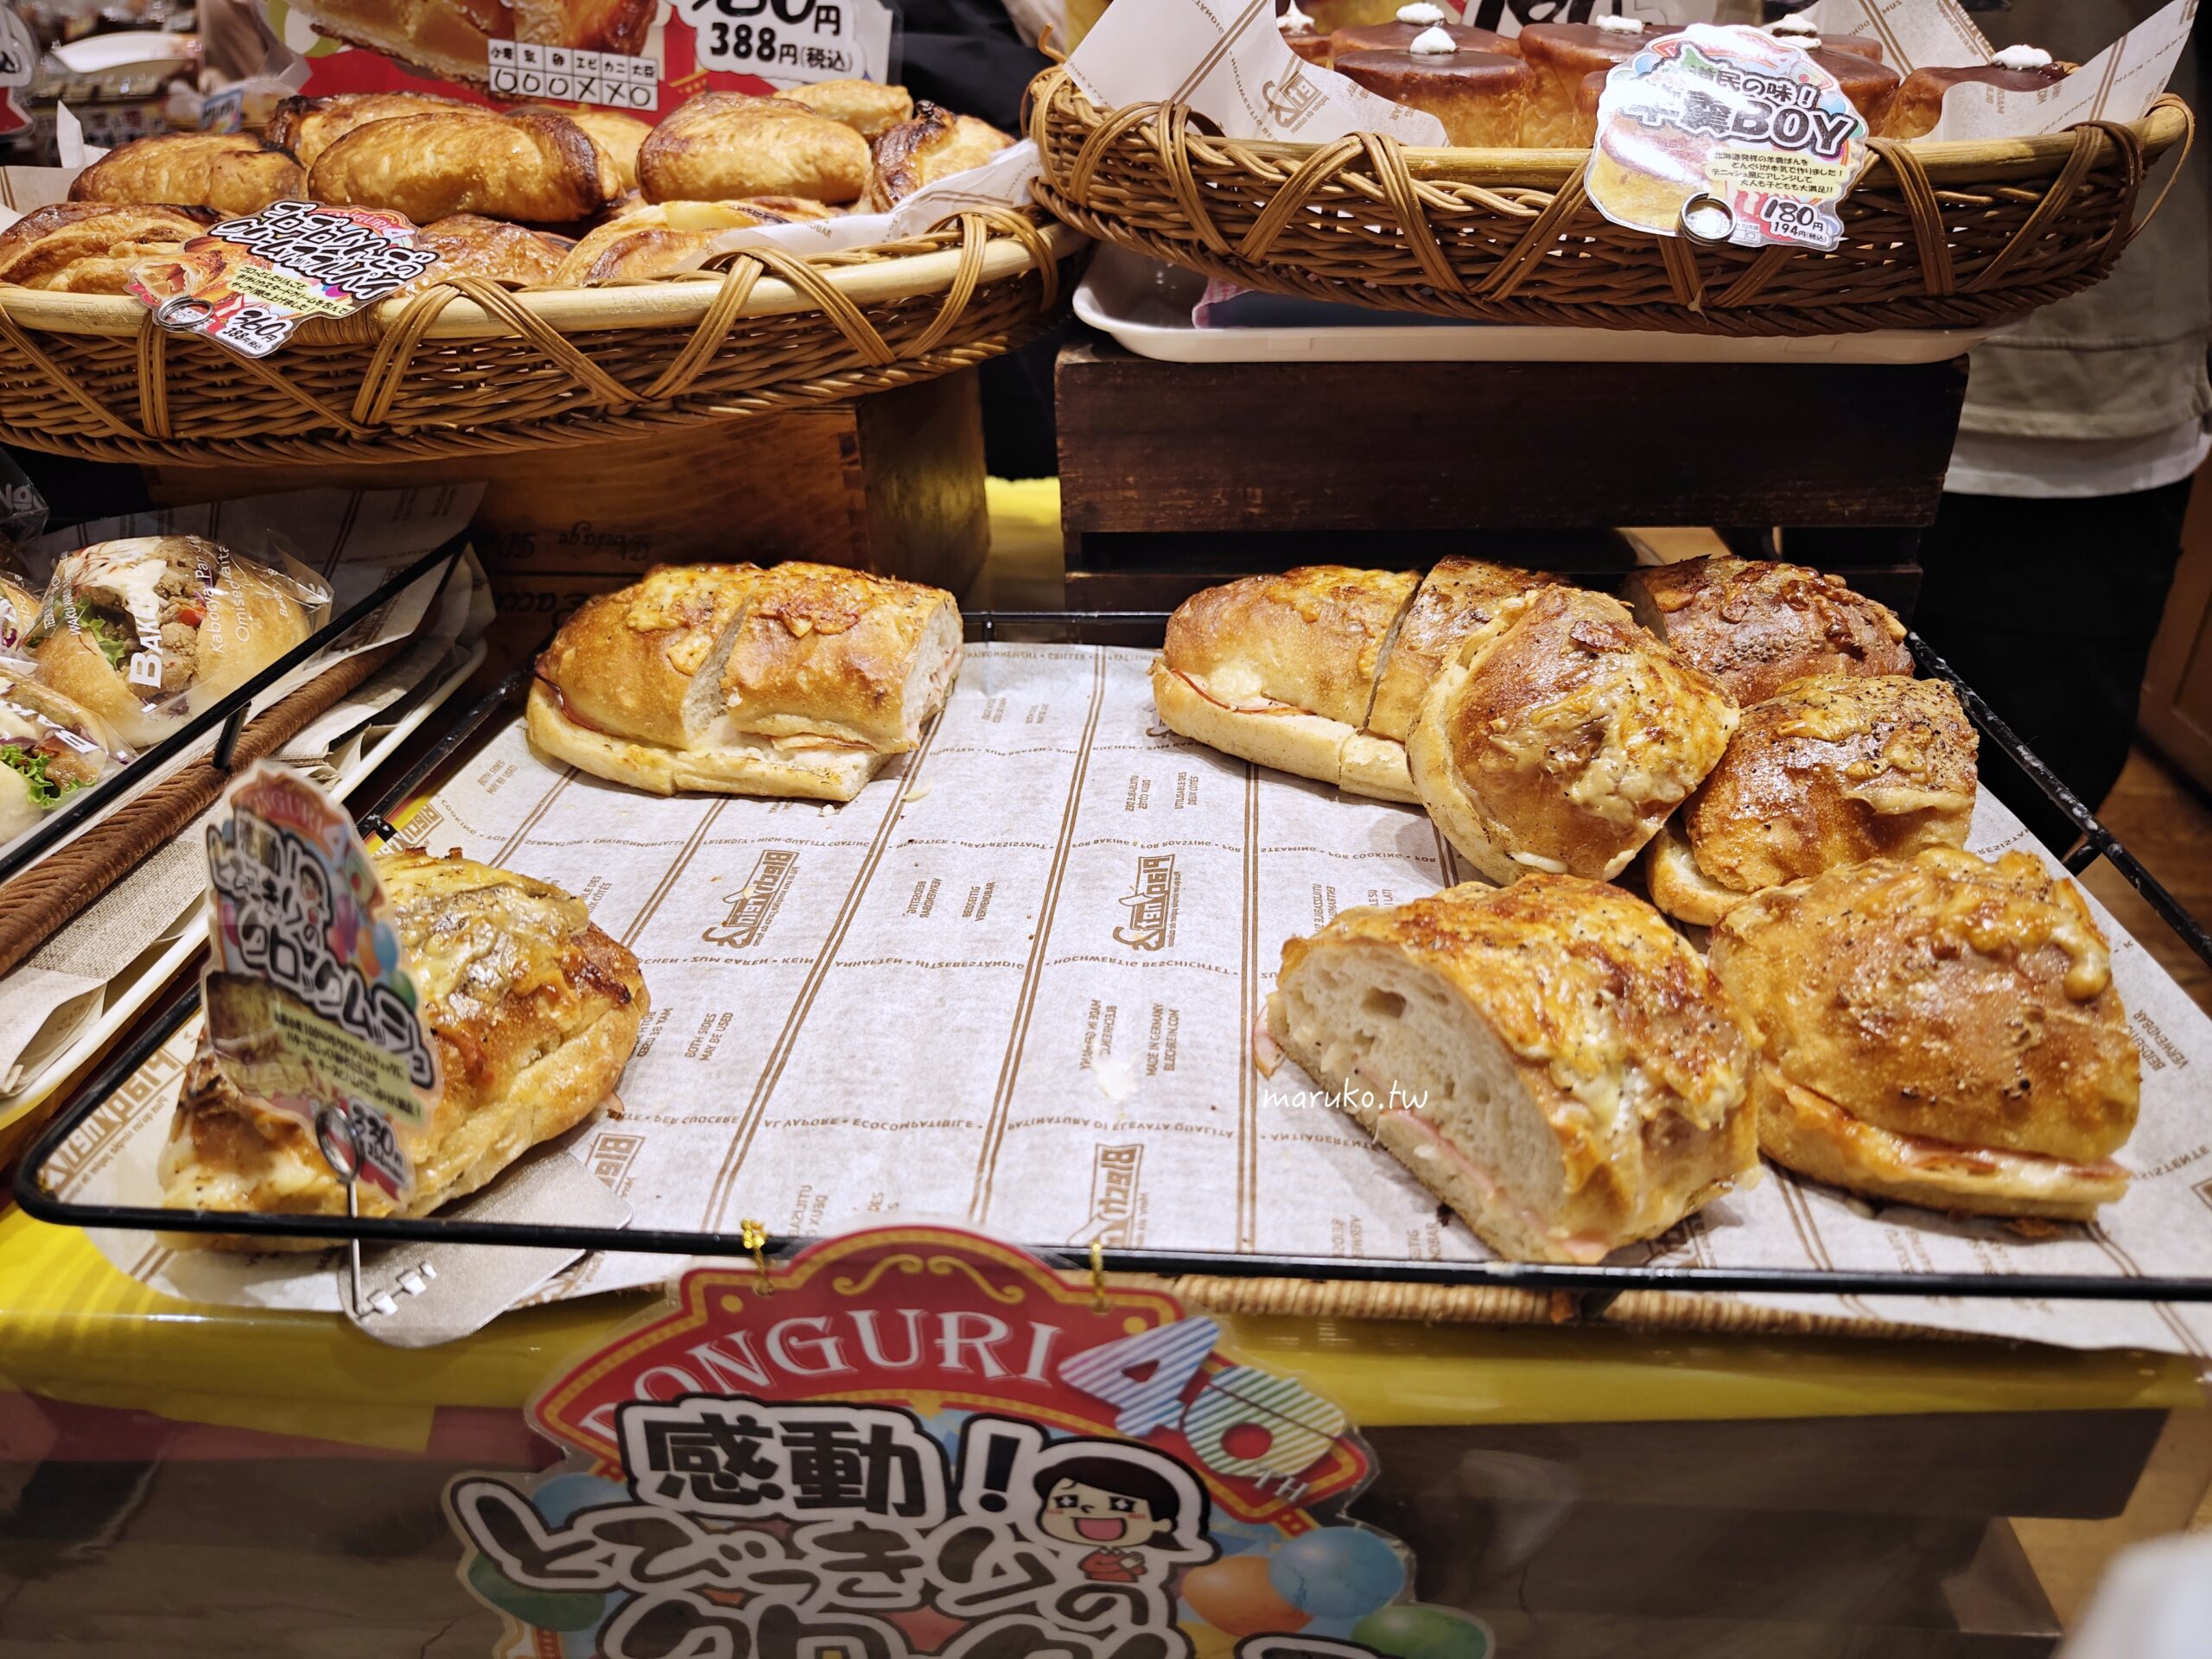 【札幌】DONGURI 創業40年老店，當地人最愛的早餐麵包店，大通站週邊美食推薦！ @Maruko與美食有個約會